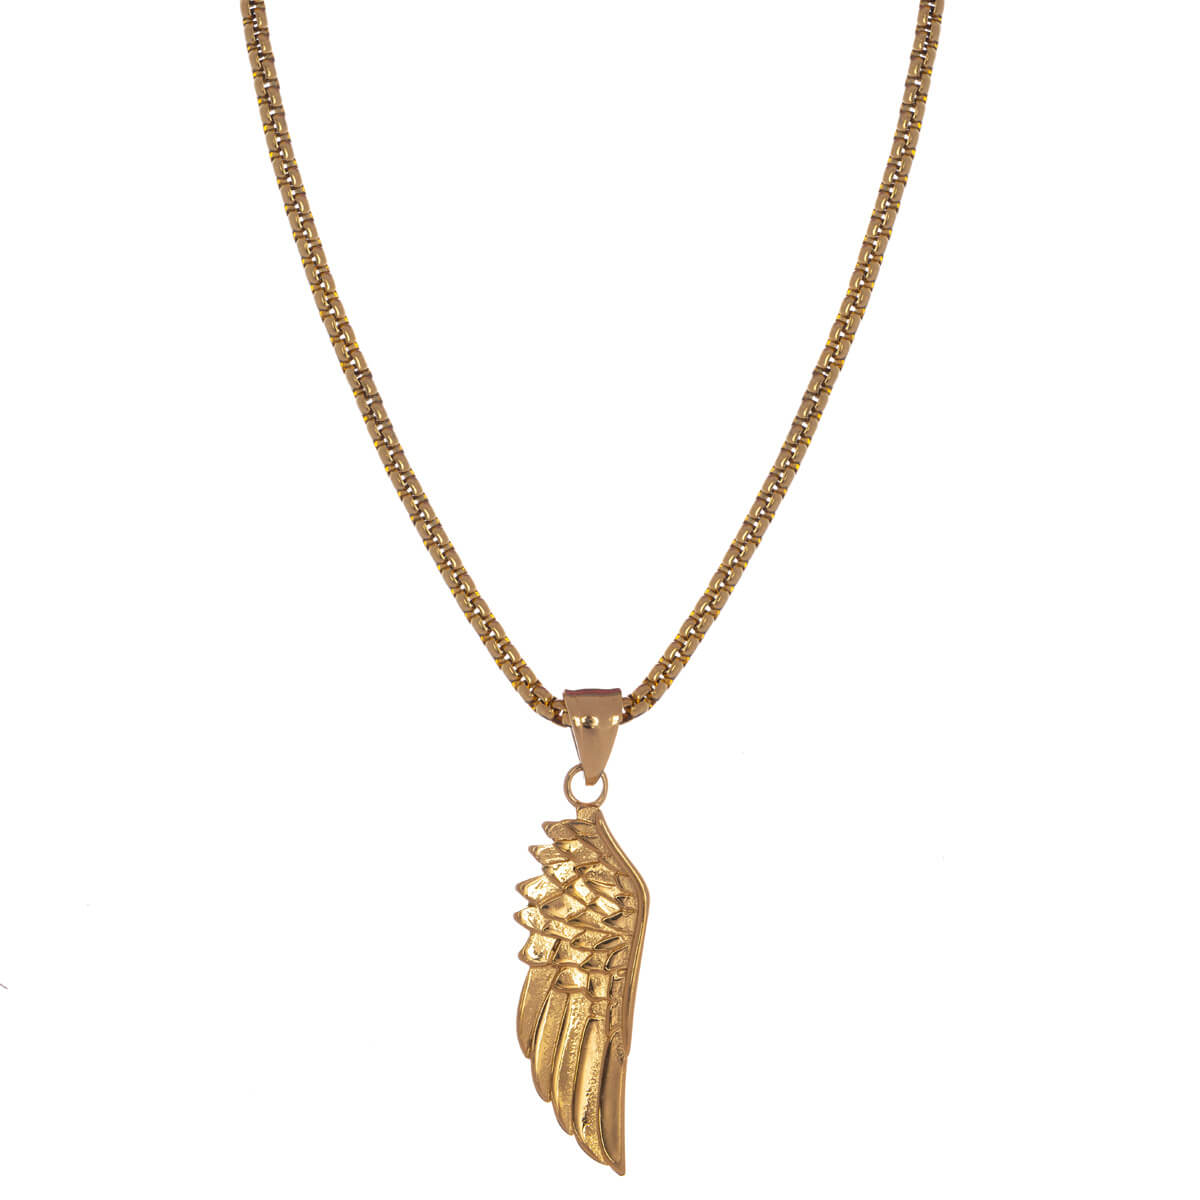 Steel necklace wing pendant (steel 316L)